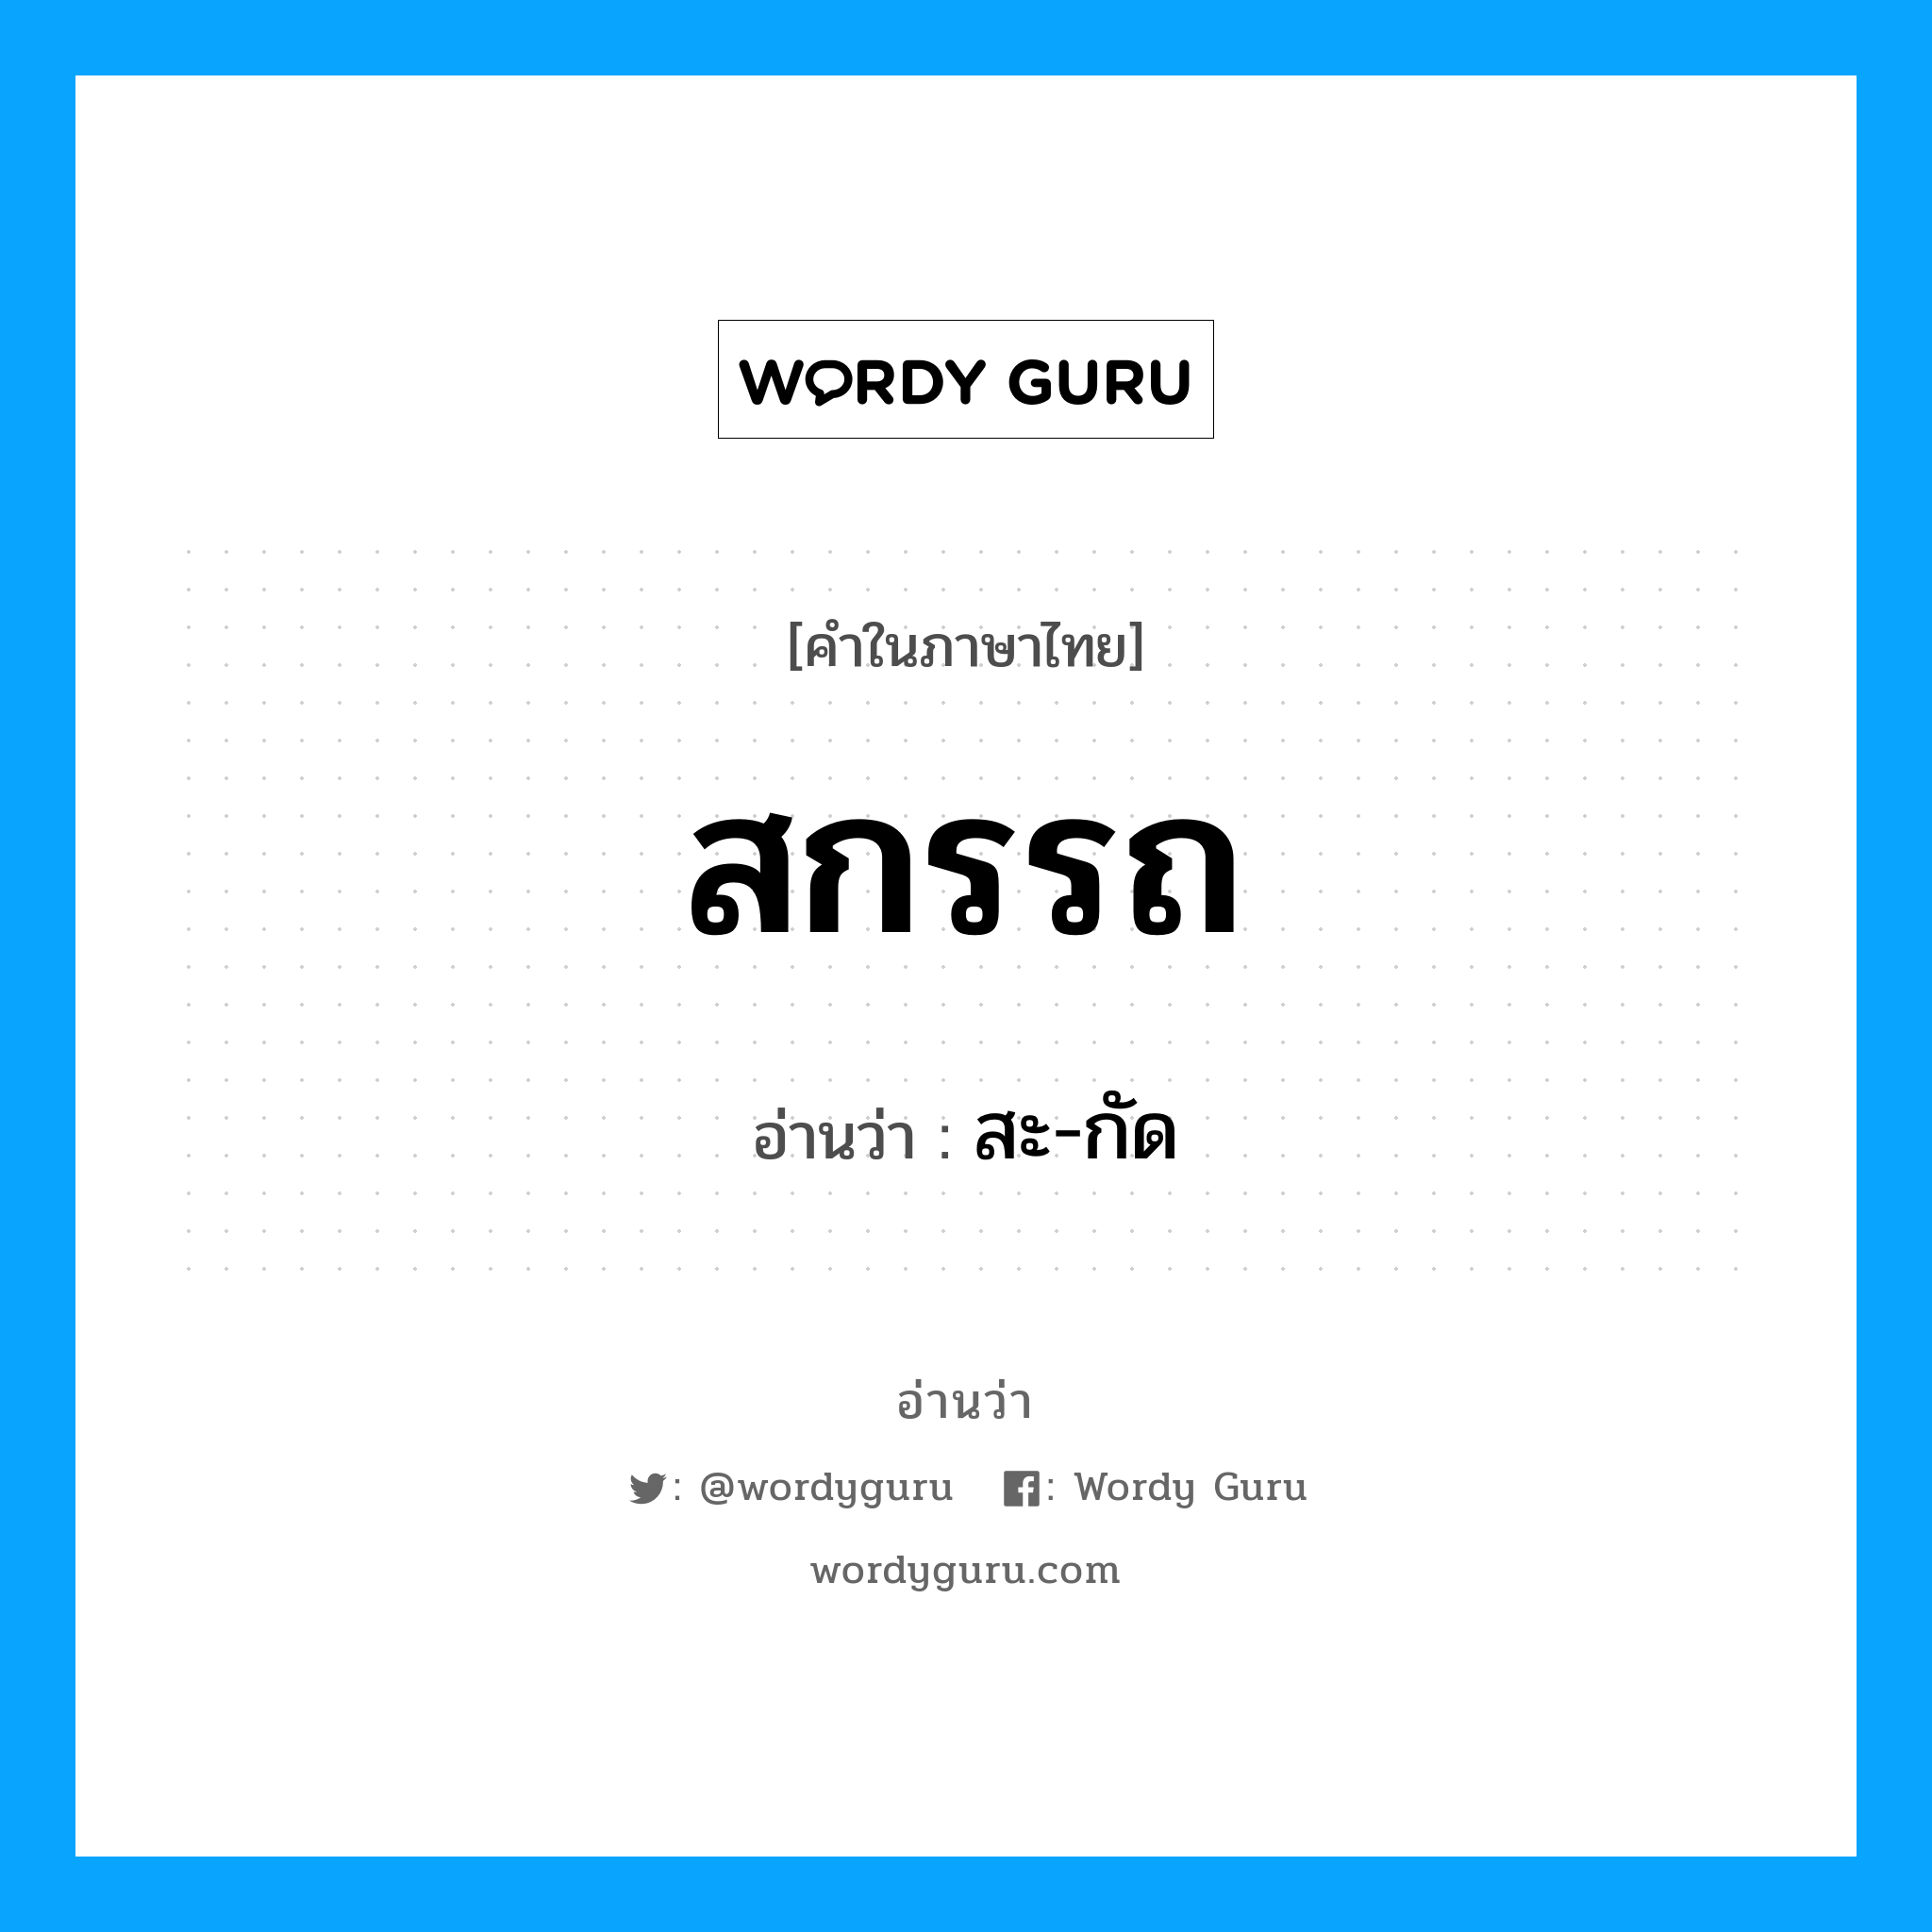 สะ-กัด เป็นคำอ่านของคำไหน?, คำในภาษาไทย สะ-กัด อ่านว่า สกรรถ